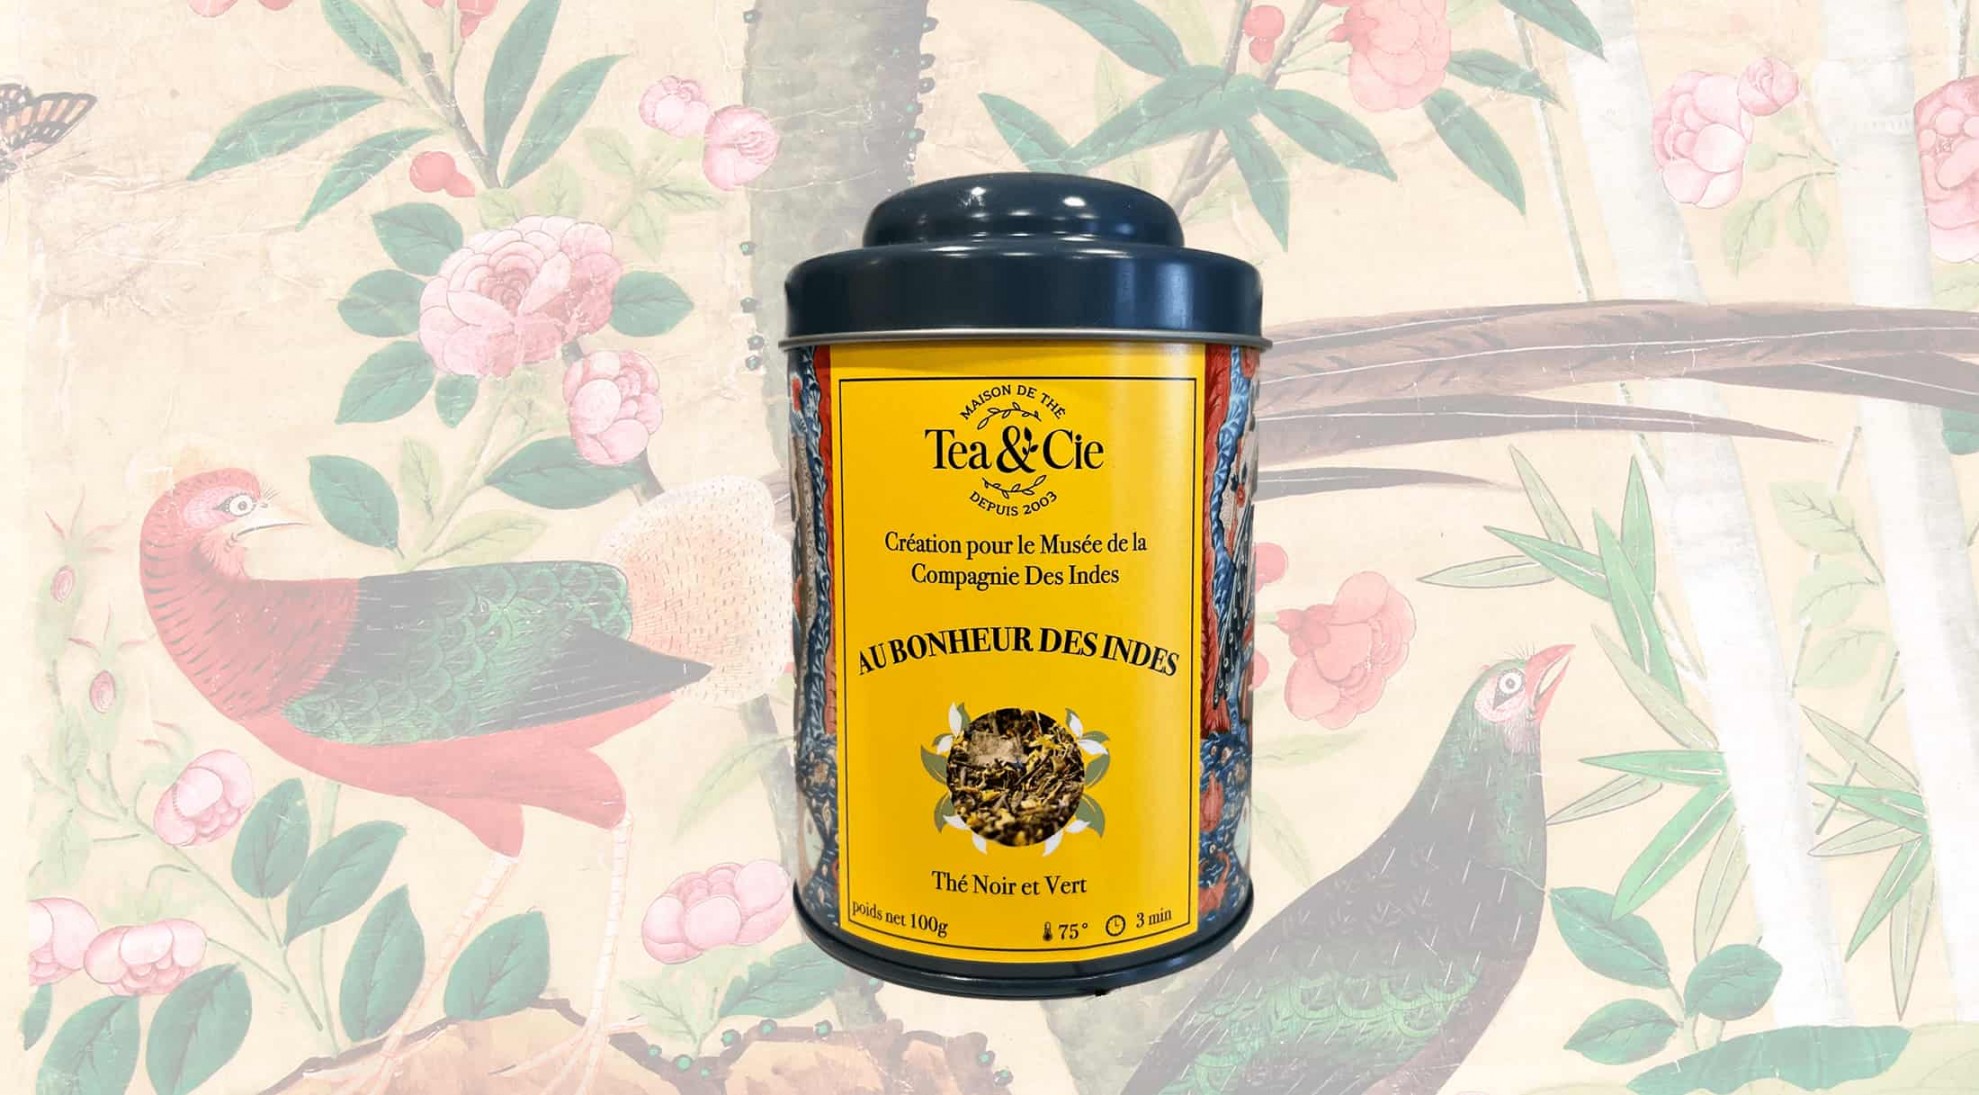 Boite collector pour le thé au Bonheur des Indes, une recette crée pour le Musée de la Compagnie des Indes de Lorient